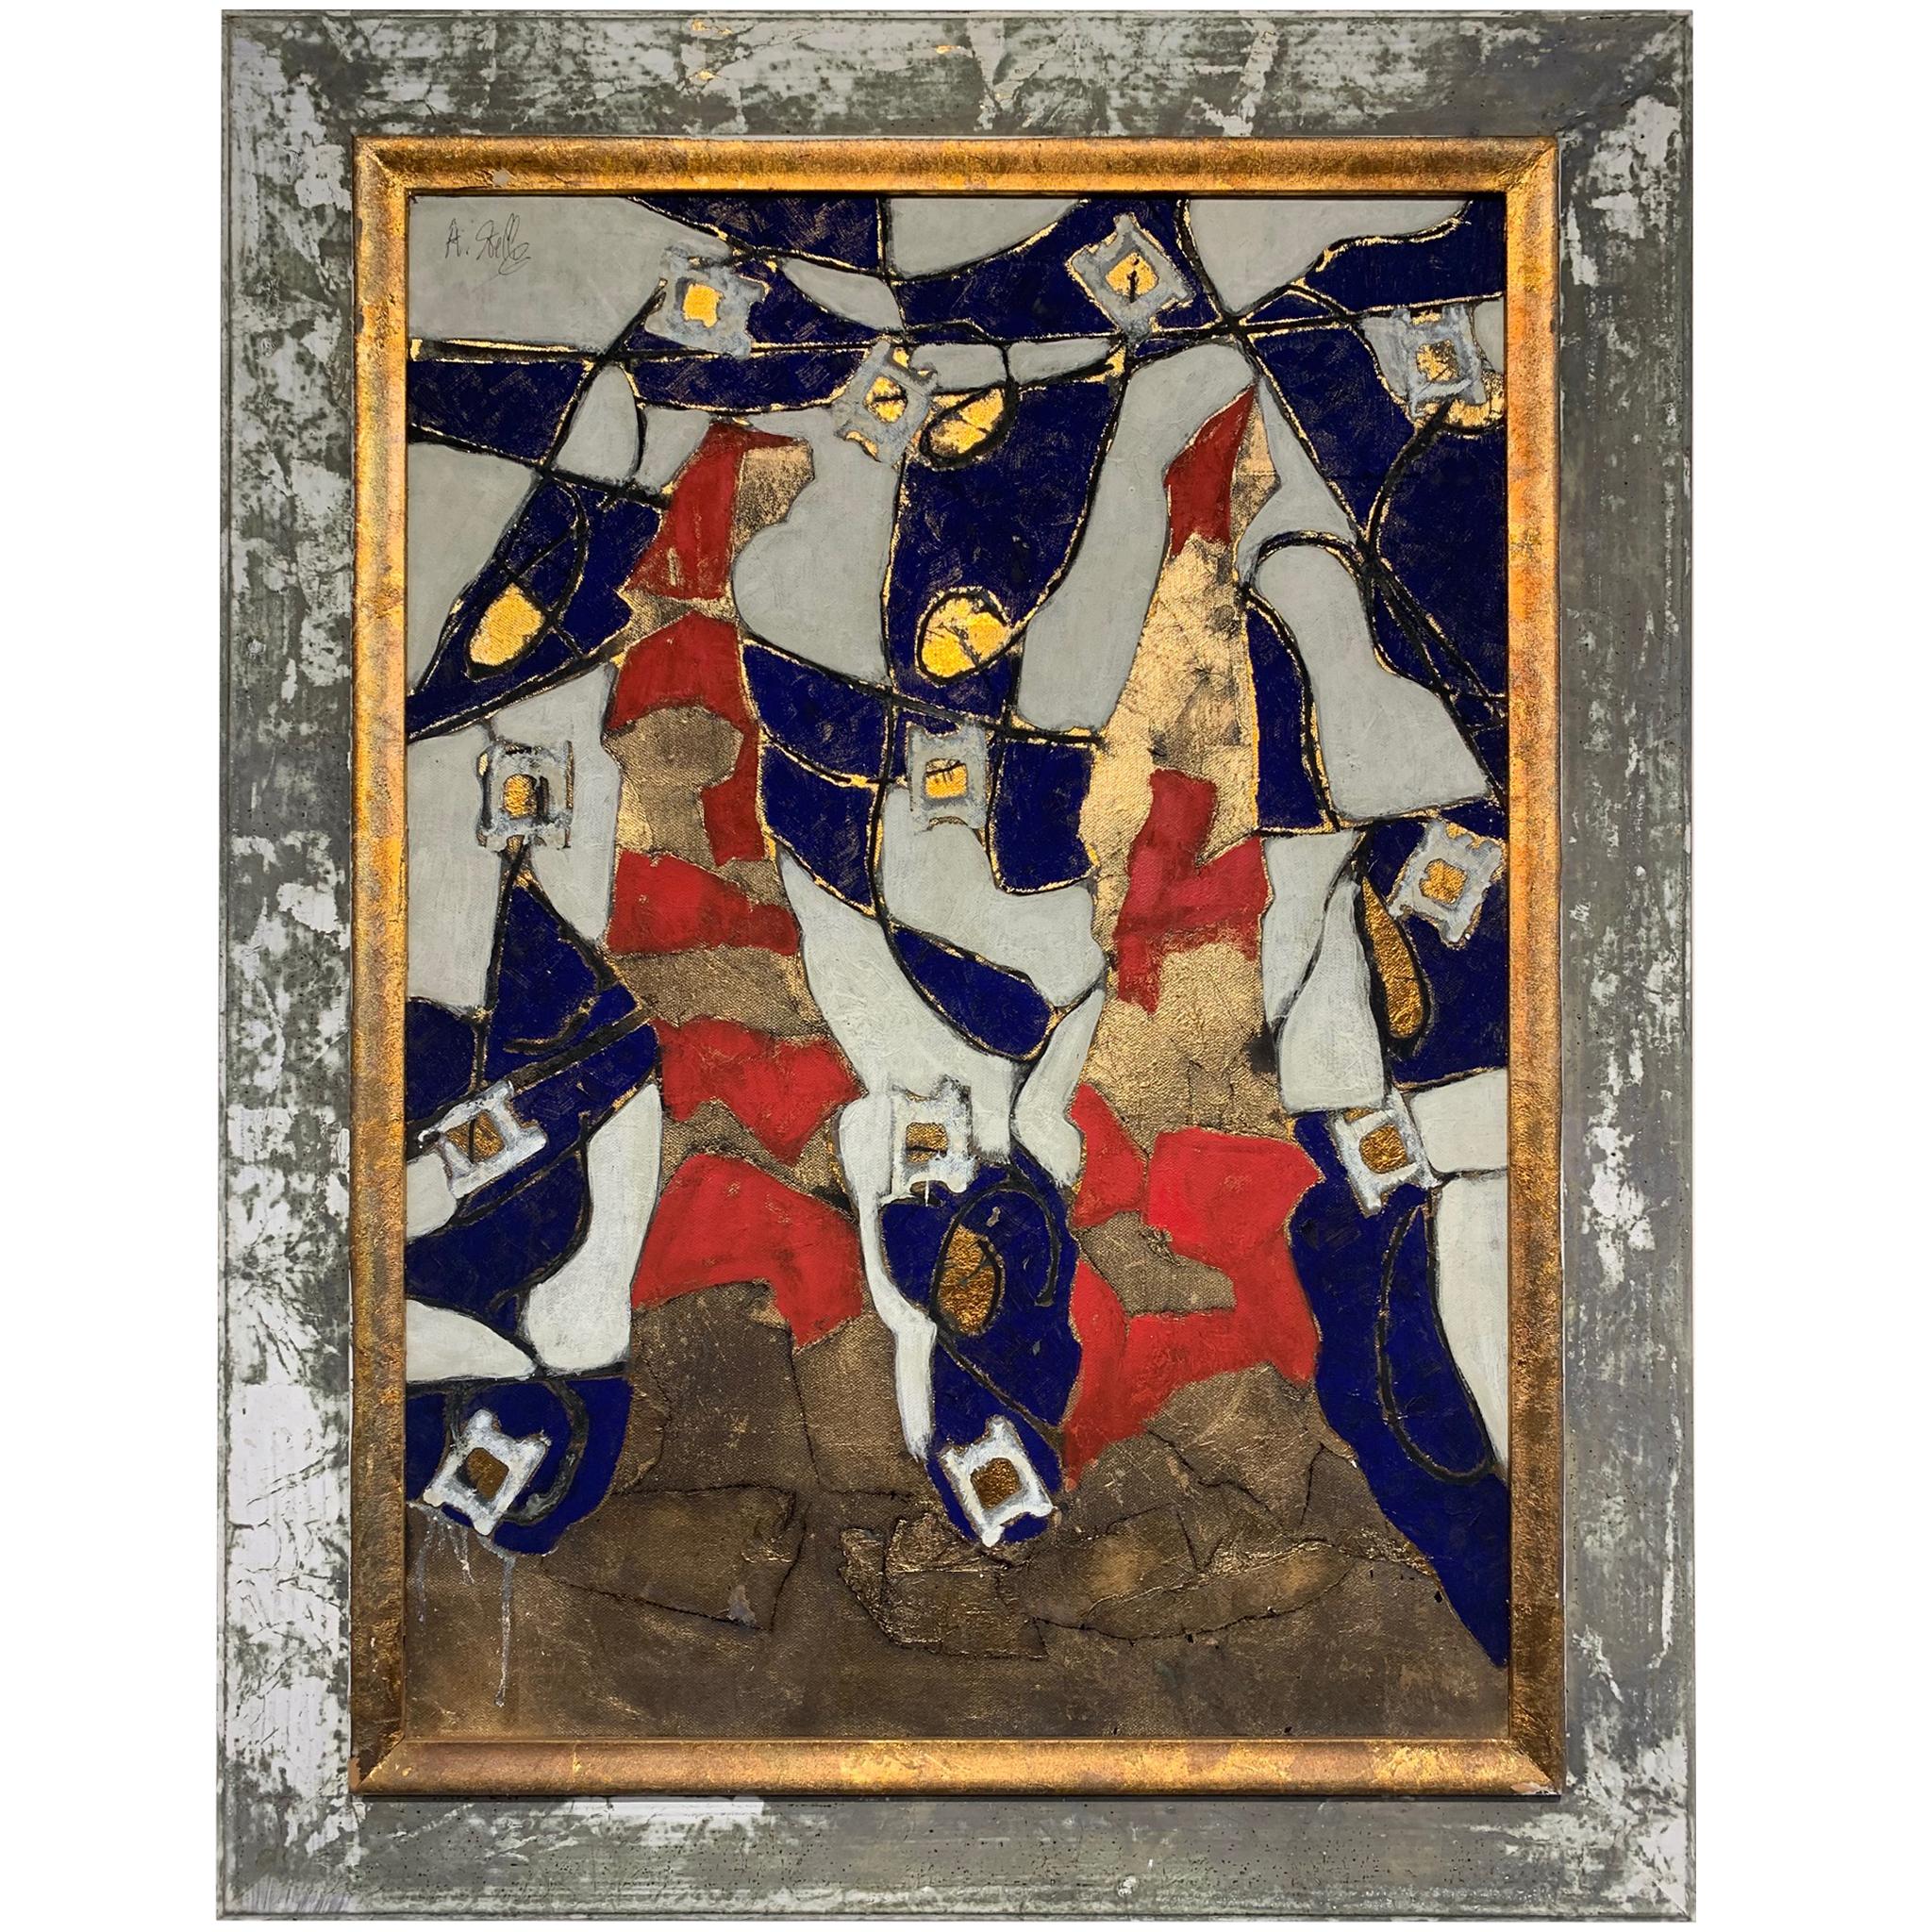 The Path of the Muses –Andrea Stella-Figuratives abstraktes Gemälde mit gemischten Medien (Zeitgenössisch), Mixed Media Art, von ANDREA STELLA